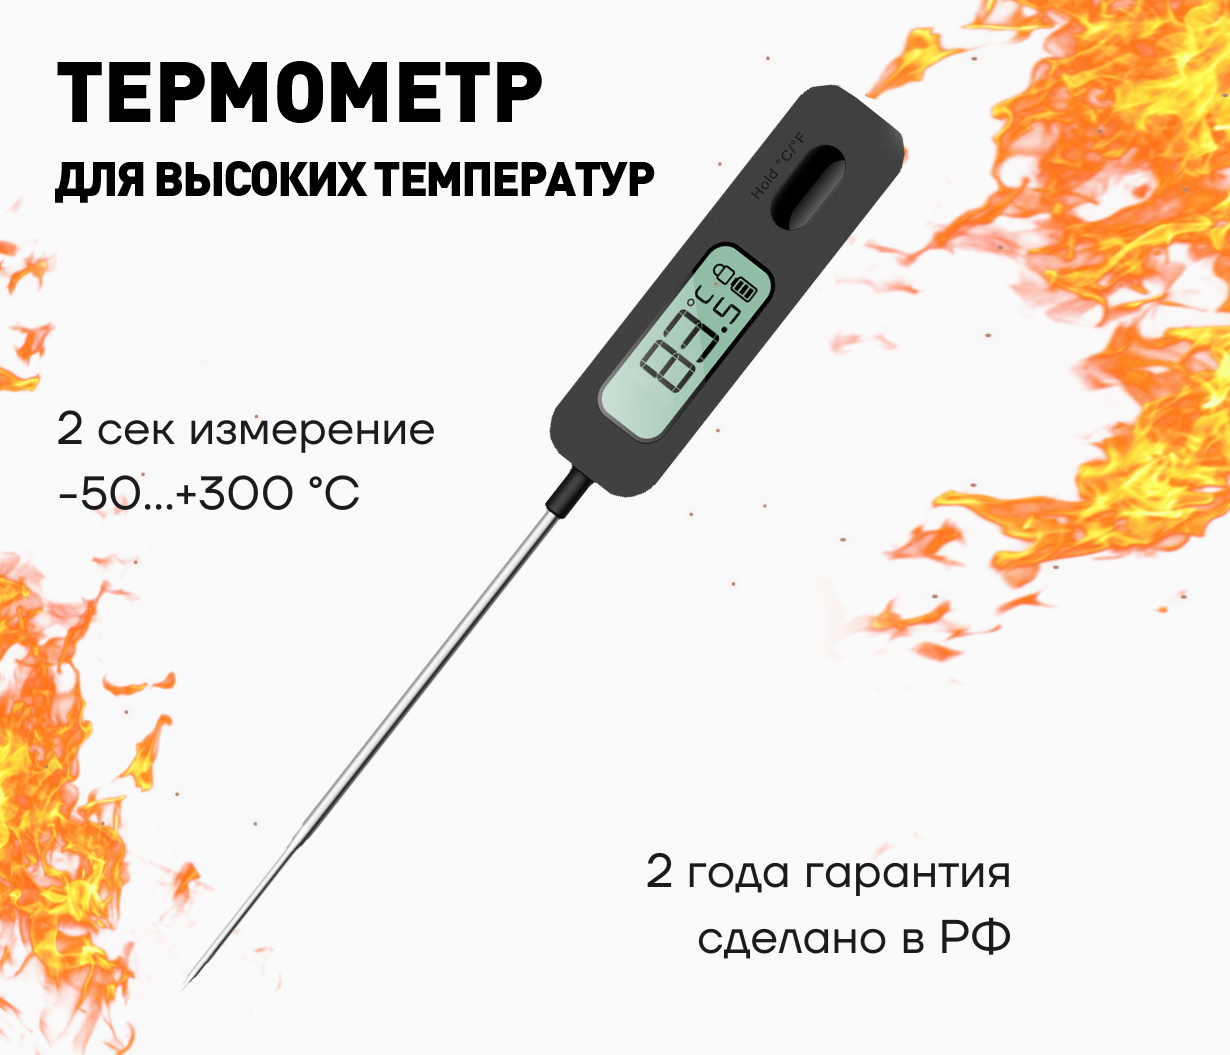 НПК Рэлсиб выпустил новый переносной измеритель температуры: IT-10 термометр-щуп для высоких температур